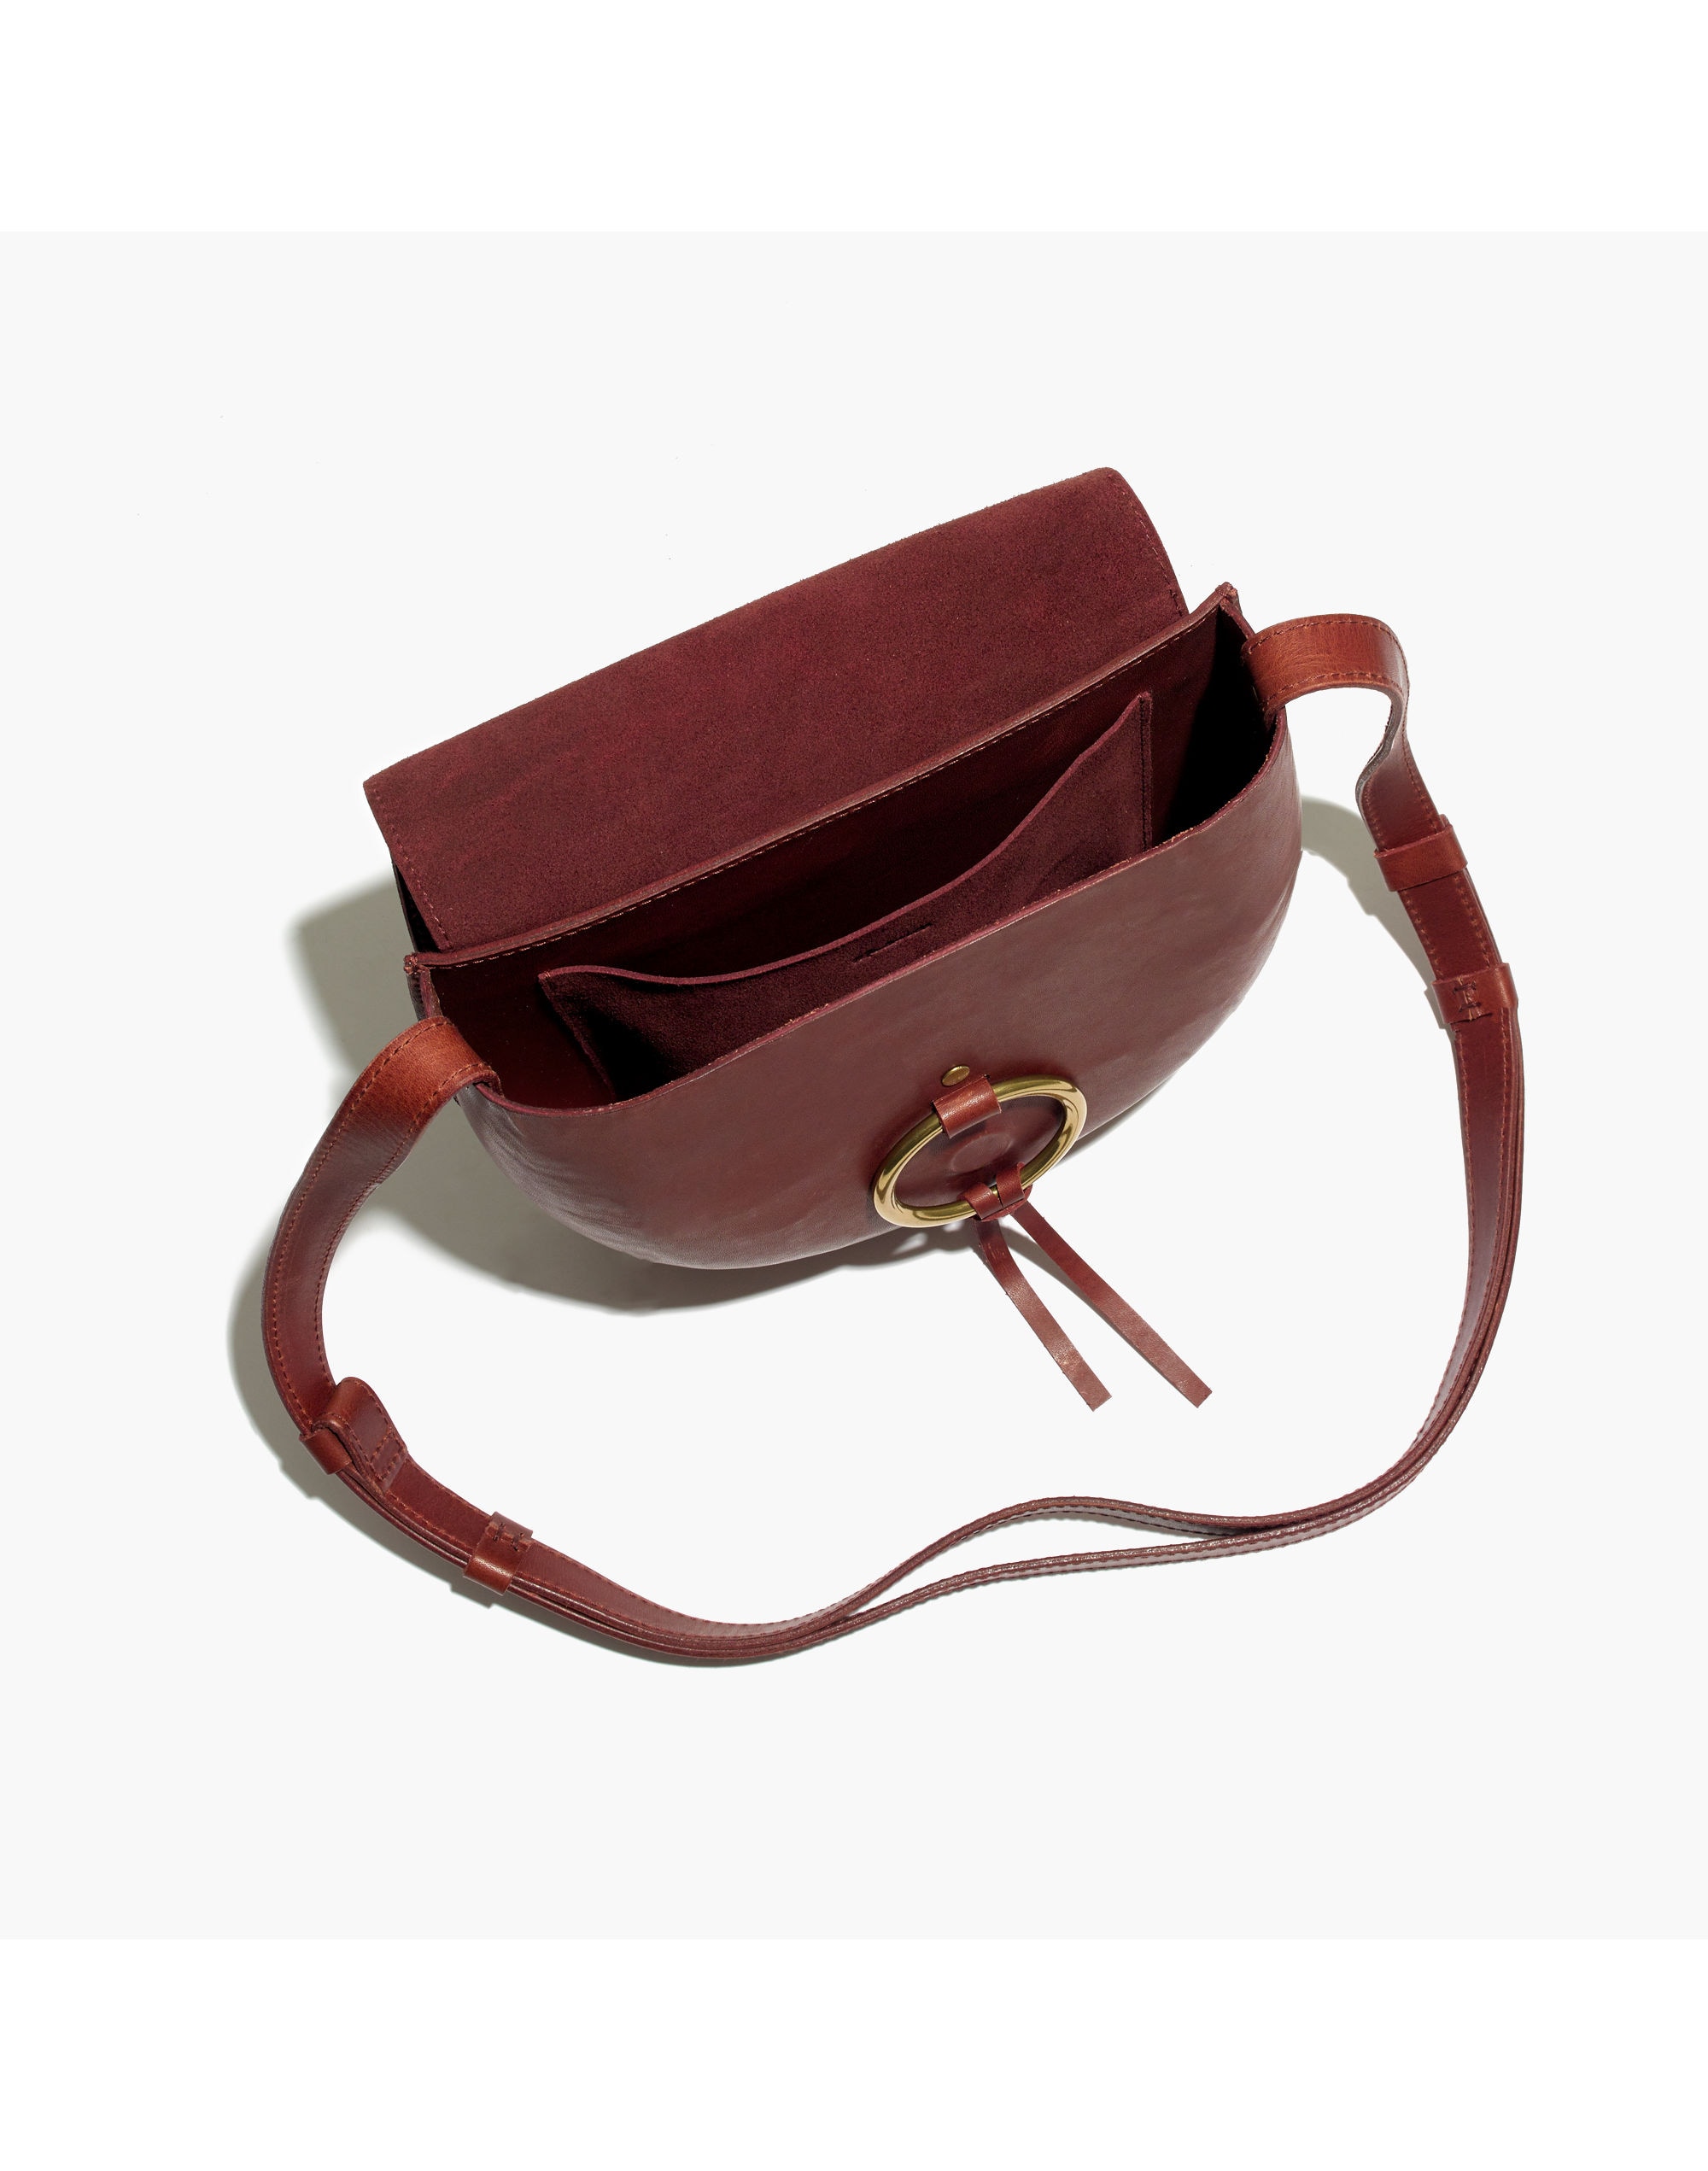 😱 OMG!!!! Remake of the saddle bag : r/handbags